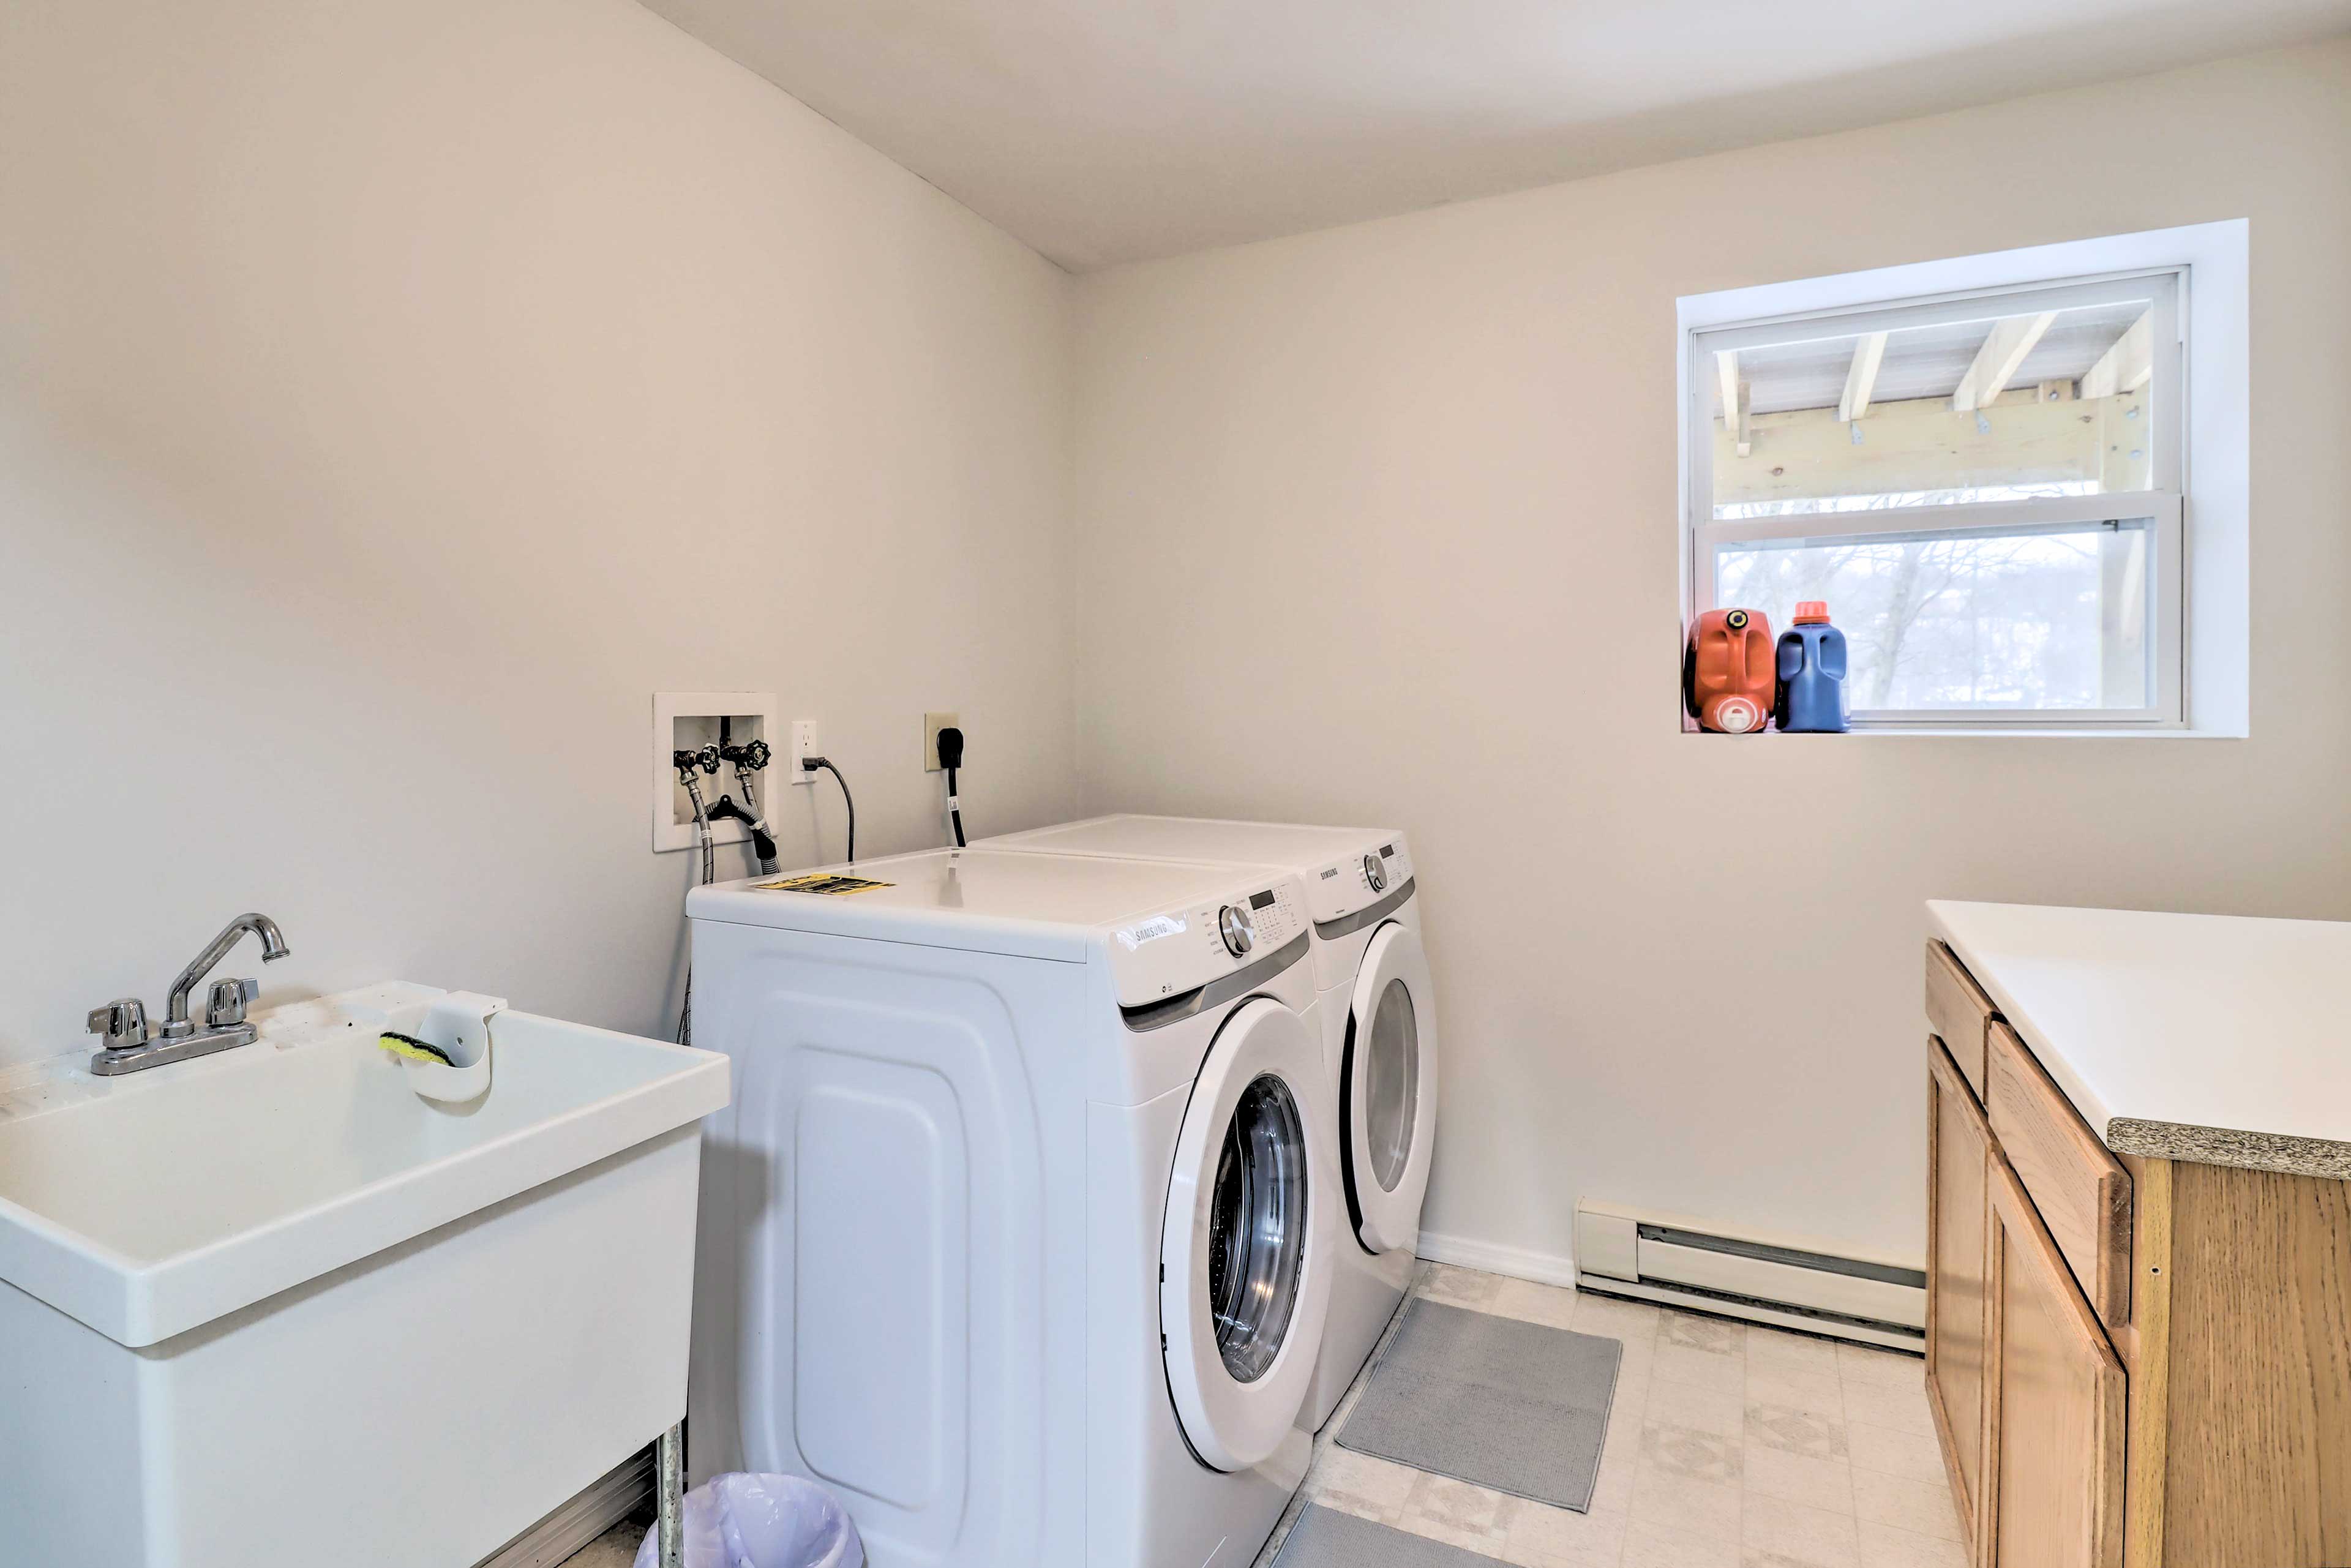 Washer & Dryer | Laundry Detergent